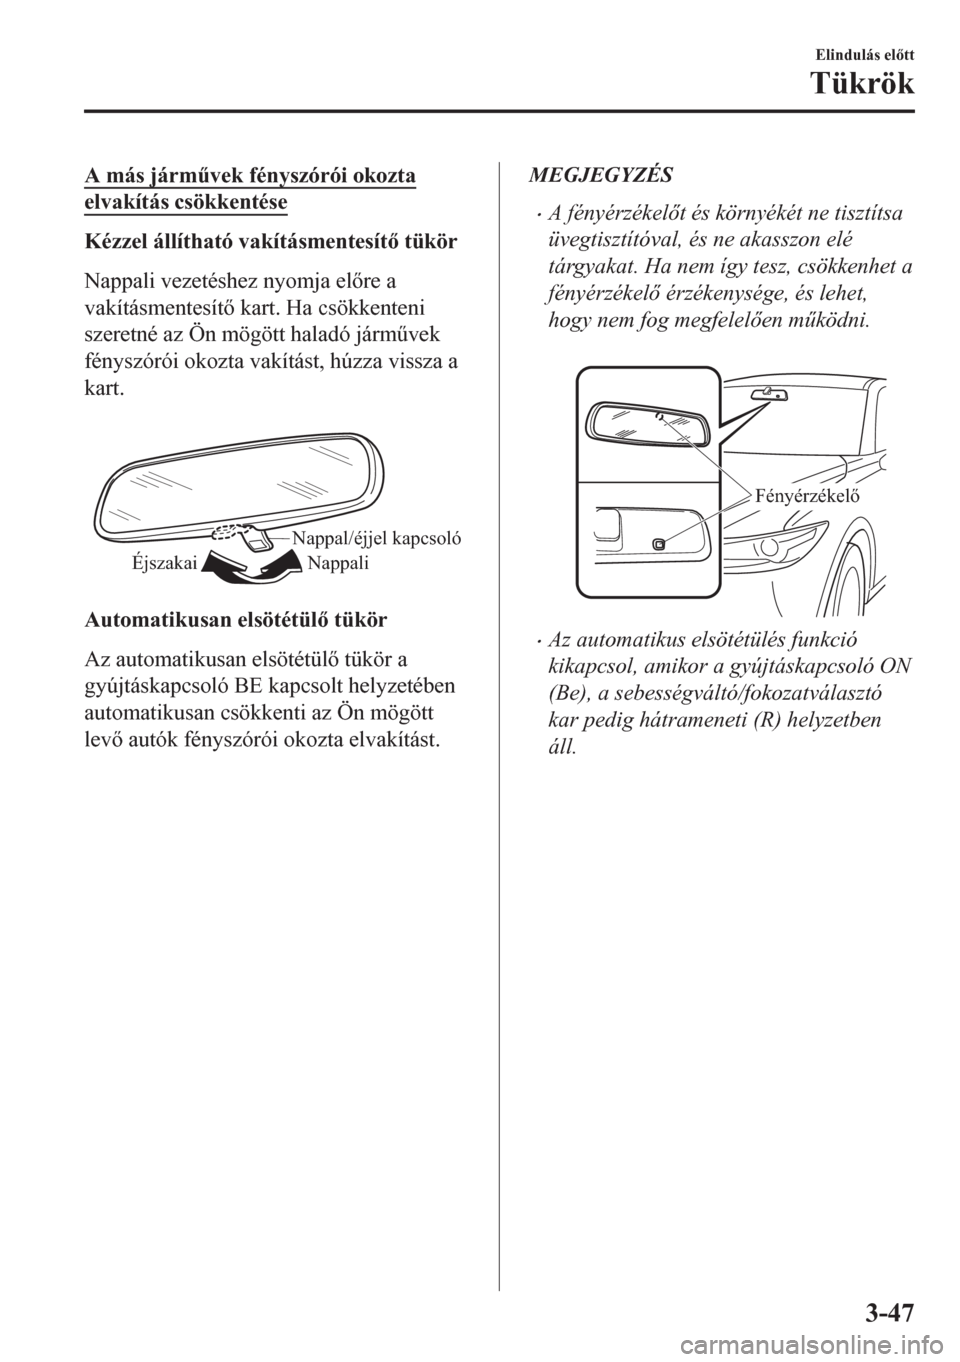 MAZDA MODEL CX-5 2018  Kezelési útmutató (in Hungarian) A más járm&vek fényszórói okozta
elvakítás csökkentése
Kézzel állítható vakításmentesít tükör
Nappali vezetéshez nyomja elre a
vakításmentesít kart. Ha csökkenteni
szeret